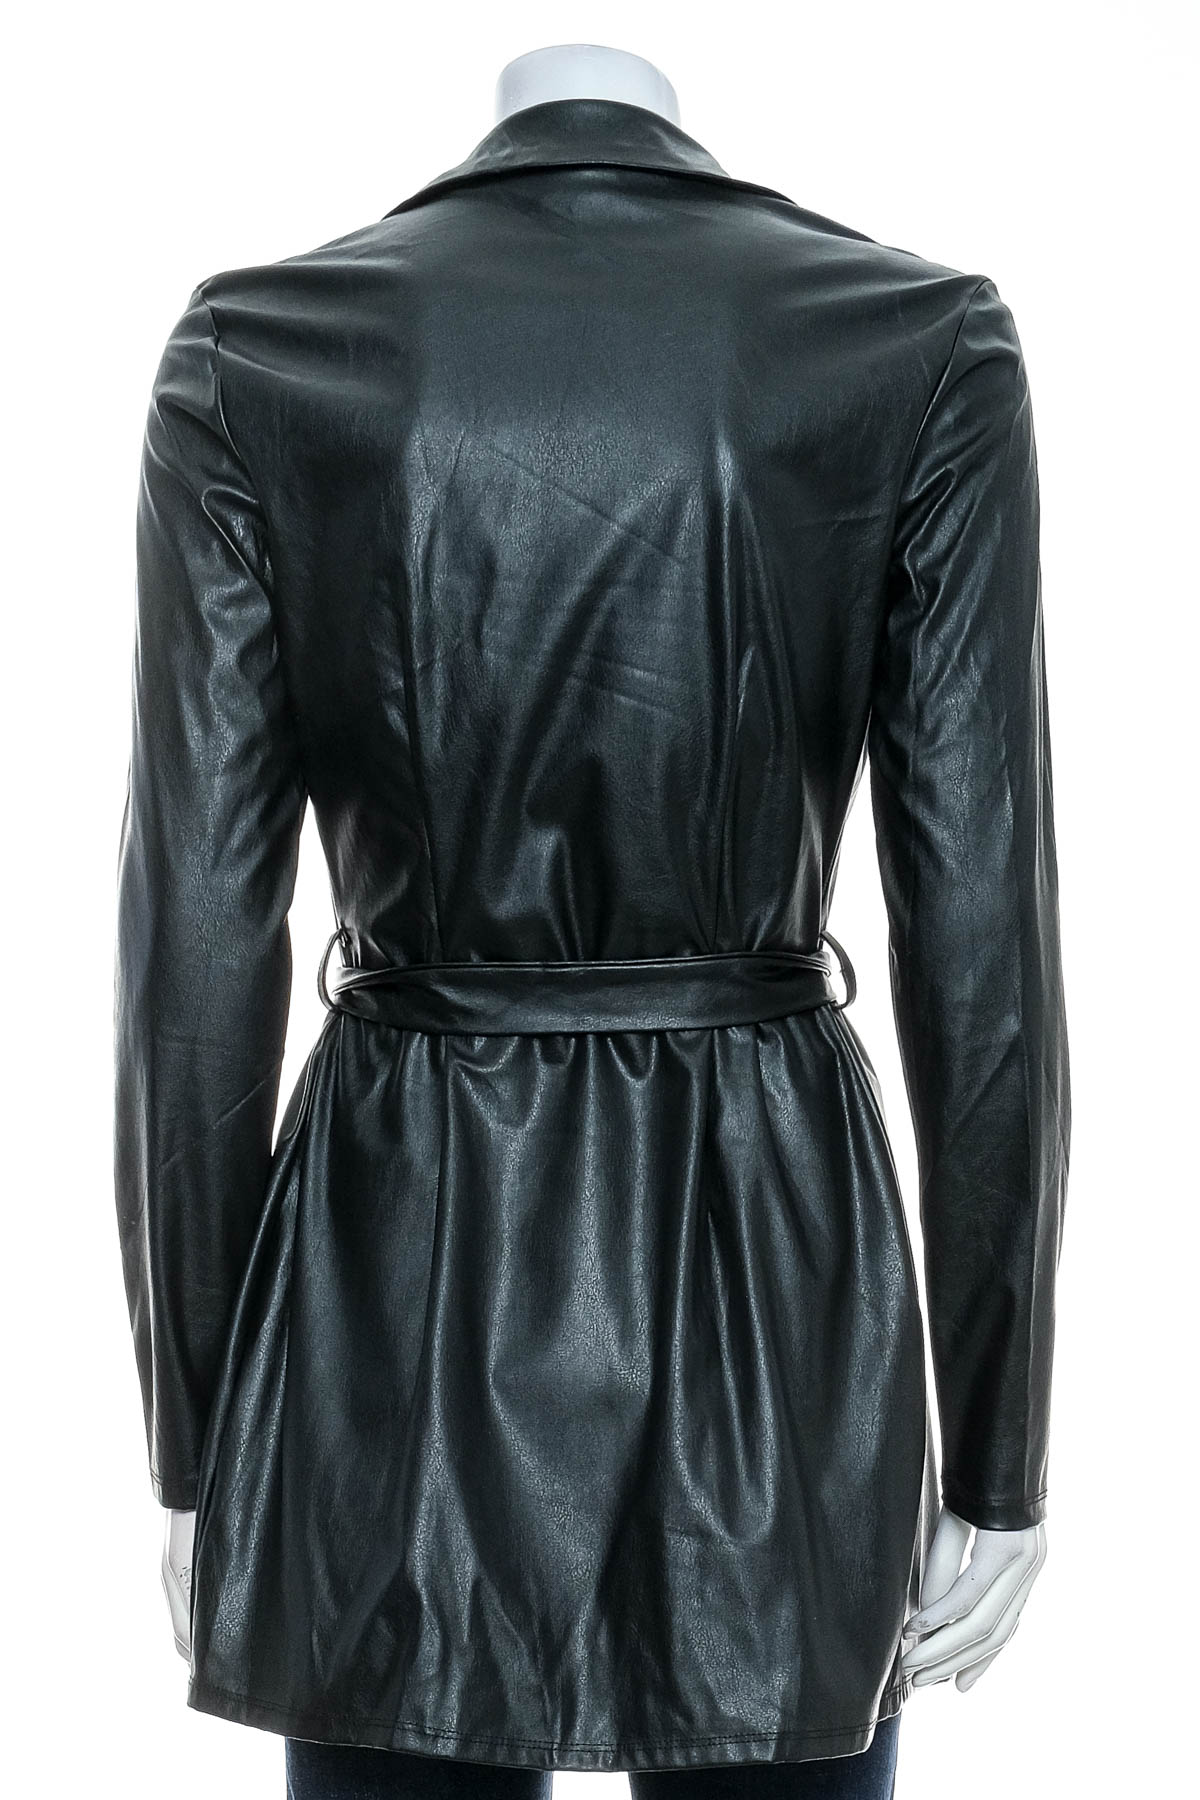 Women's leather blazer - FLOUNCE CLUB - 1